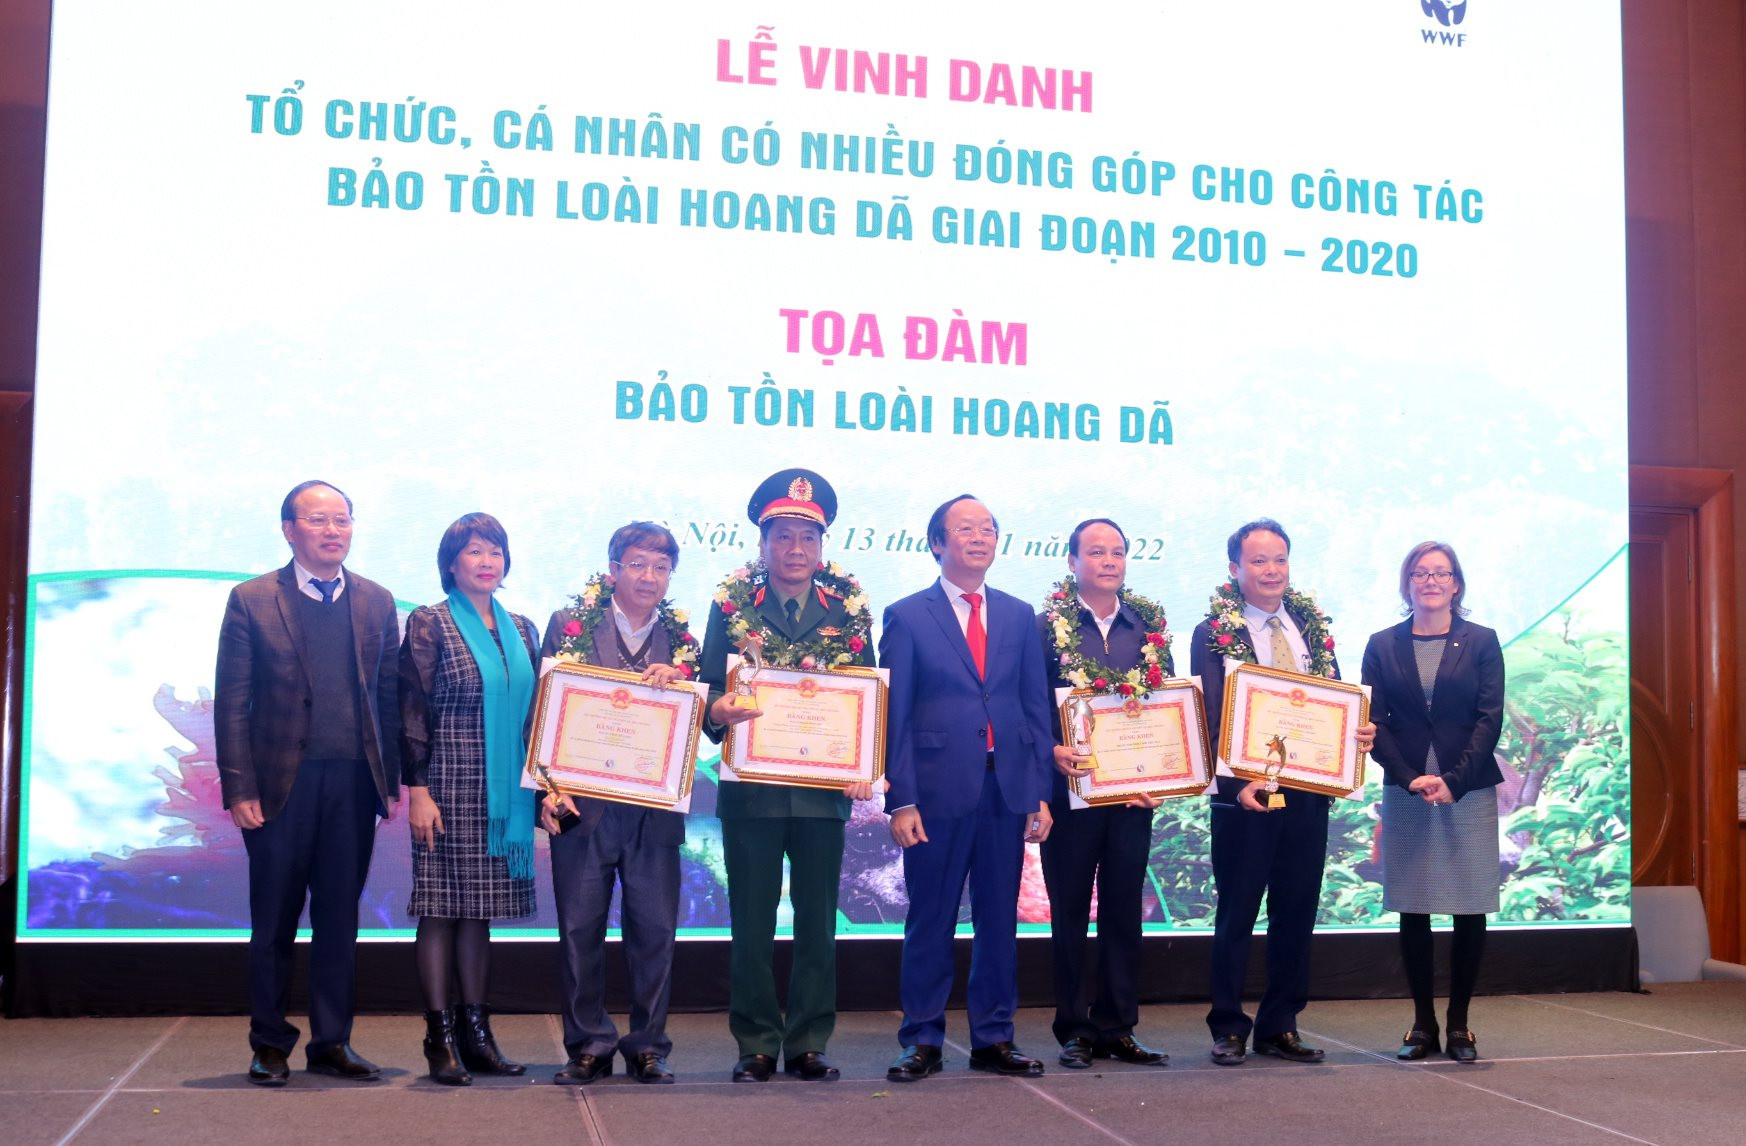 Thứ trưởng Võ Tuấn Nhân và lãnh đạo Ngân hàng Thế giới và Tổ chức WWF Việt Nam đã trao Bằng khen của Bộ trưởng Bộ Tài nguyên và Môi trường cho các tập thể có thành tích xuất sắc trong lĩnh vực bảo tồn thiên nhiên và đa dạng sinh học năm 2021. Ảnh: Thanh Tùng